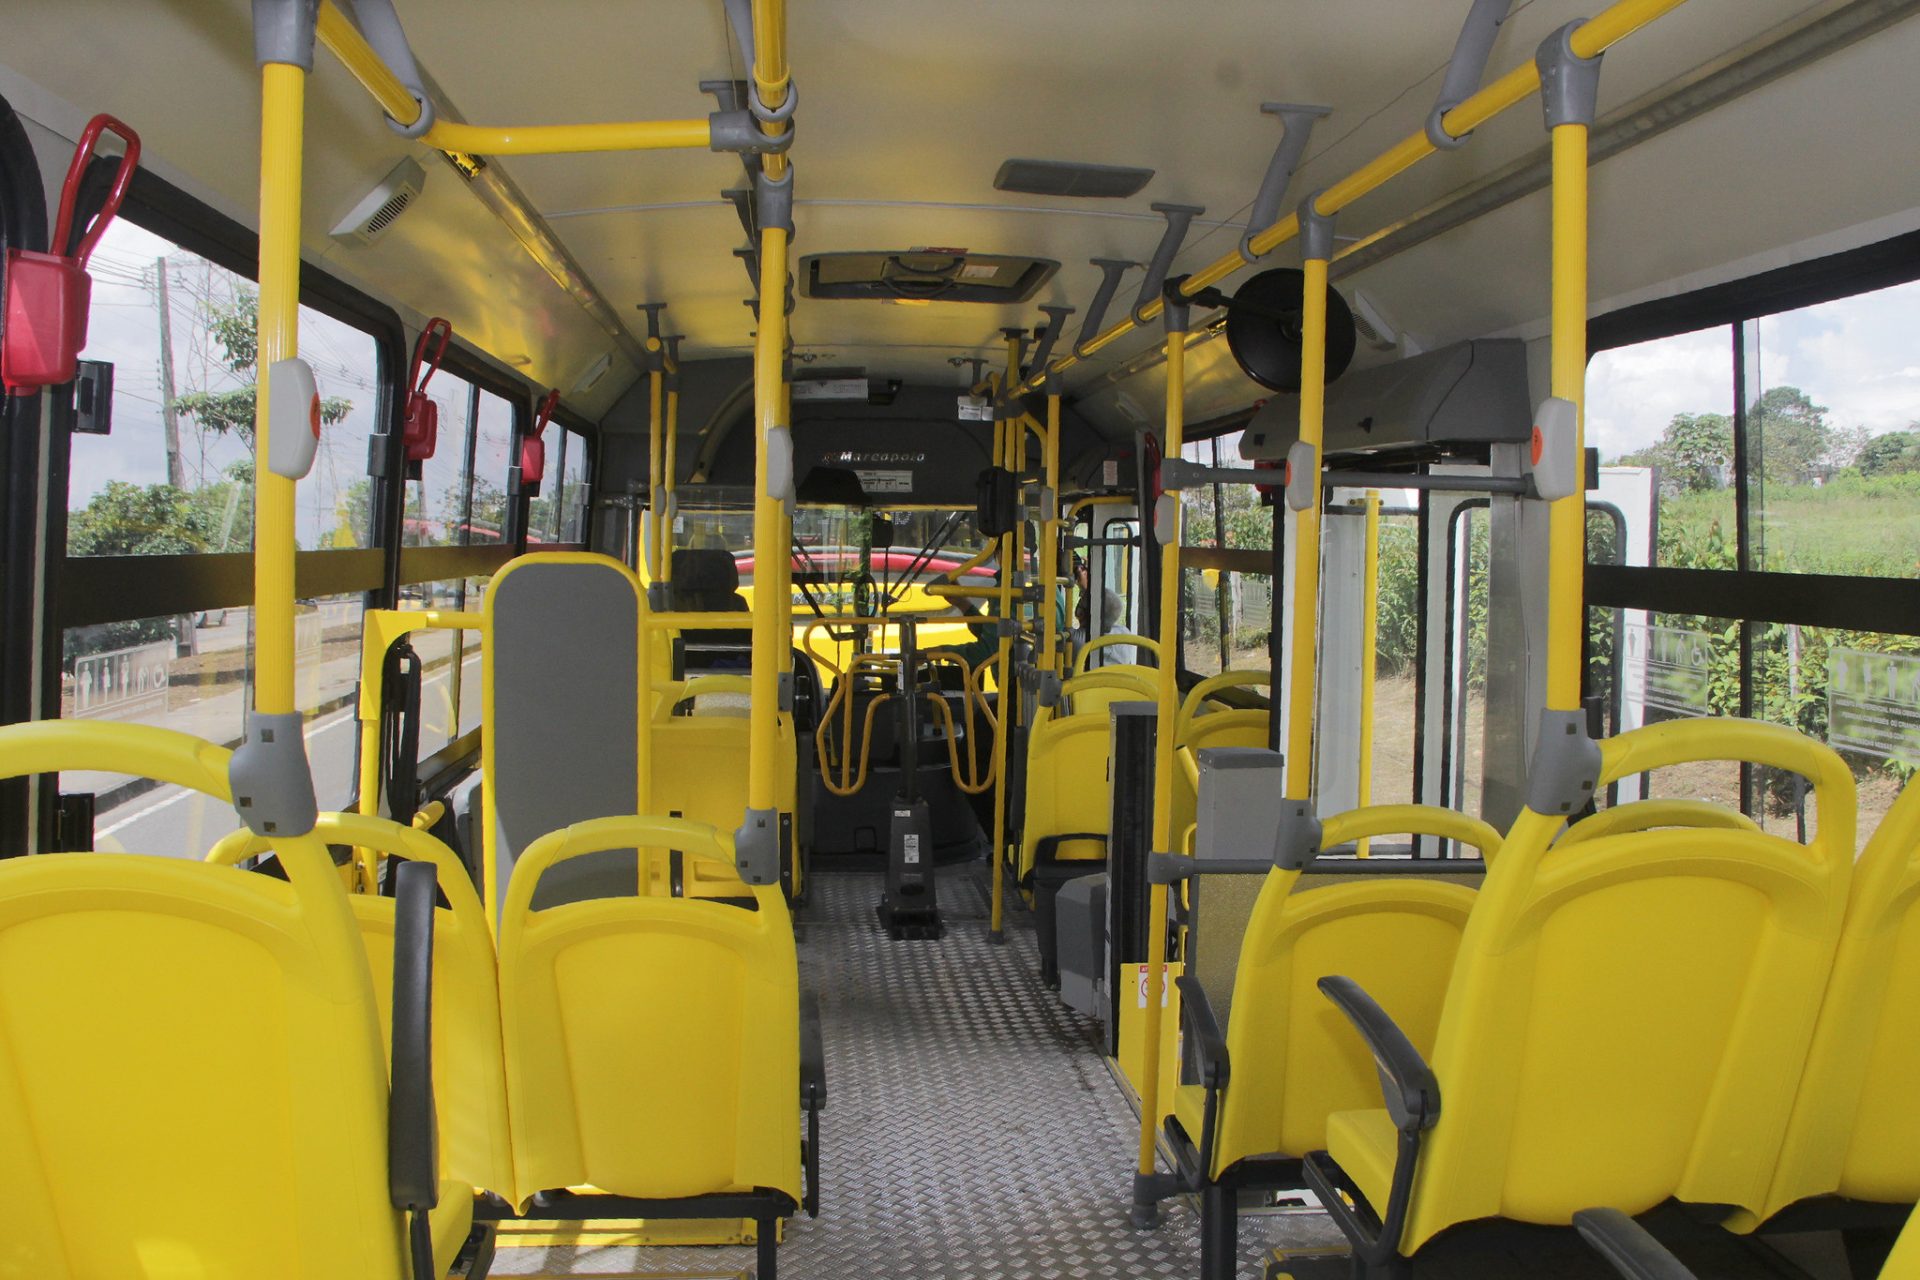 Passageiro de Ônibus do transporte coletivo de Manaus - Foto: João Viana / Semcom